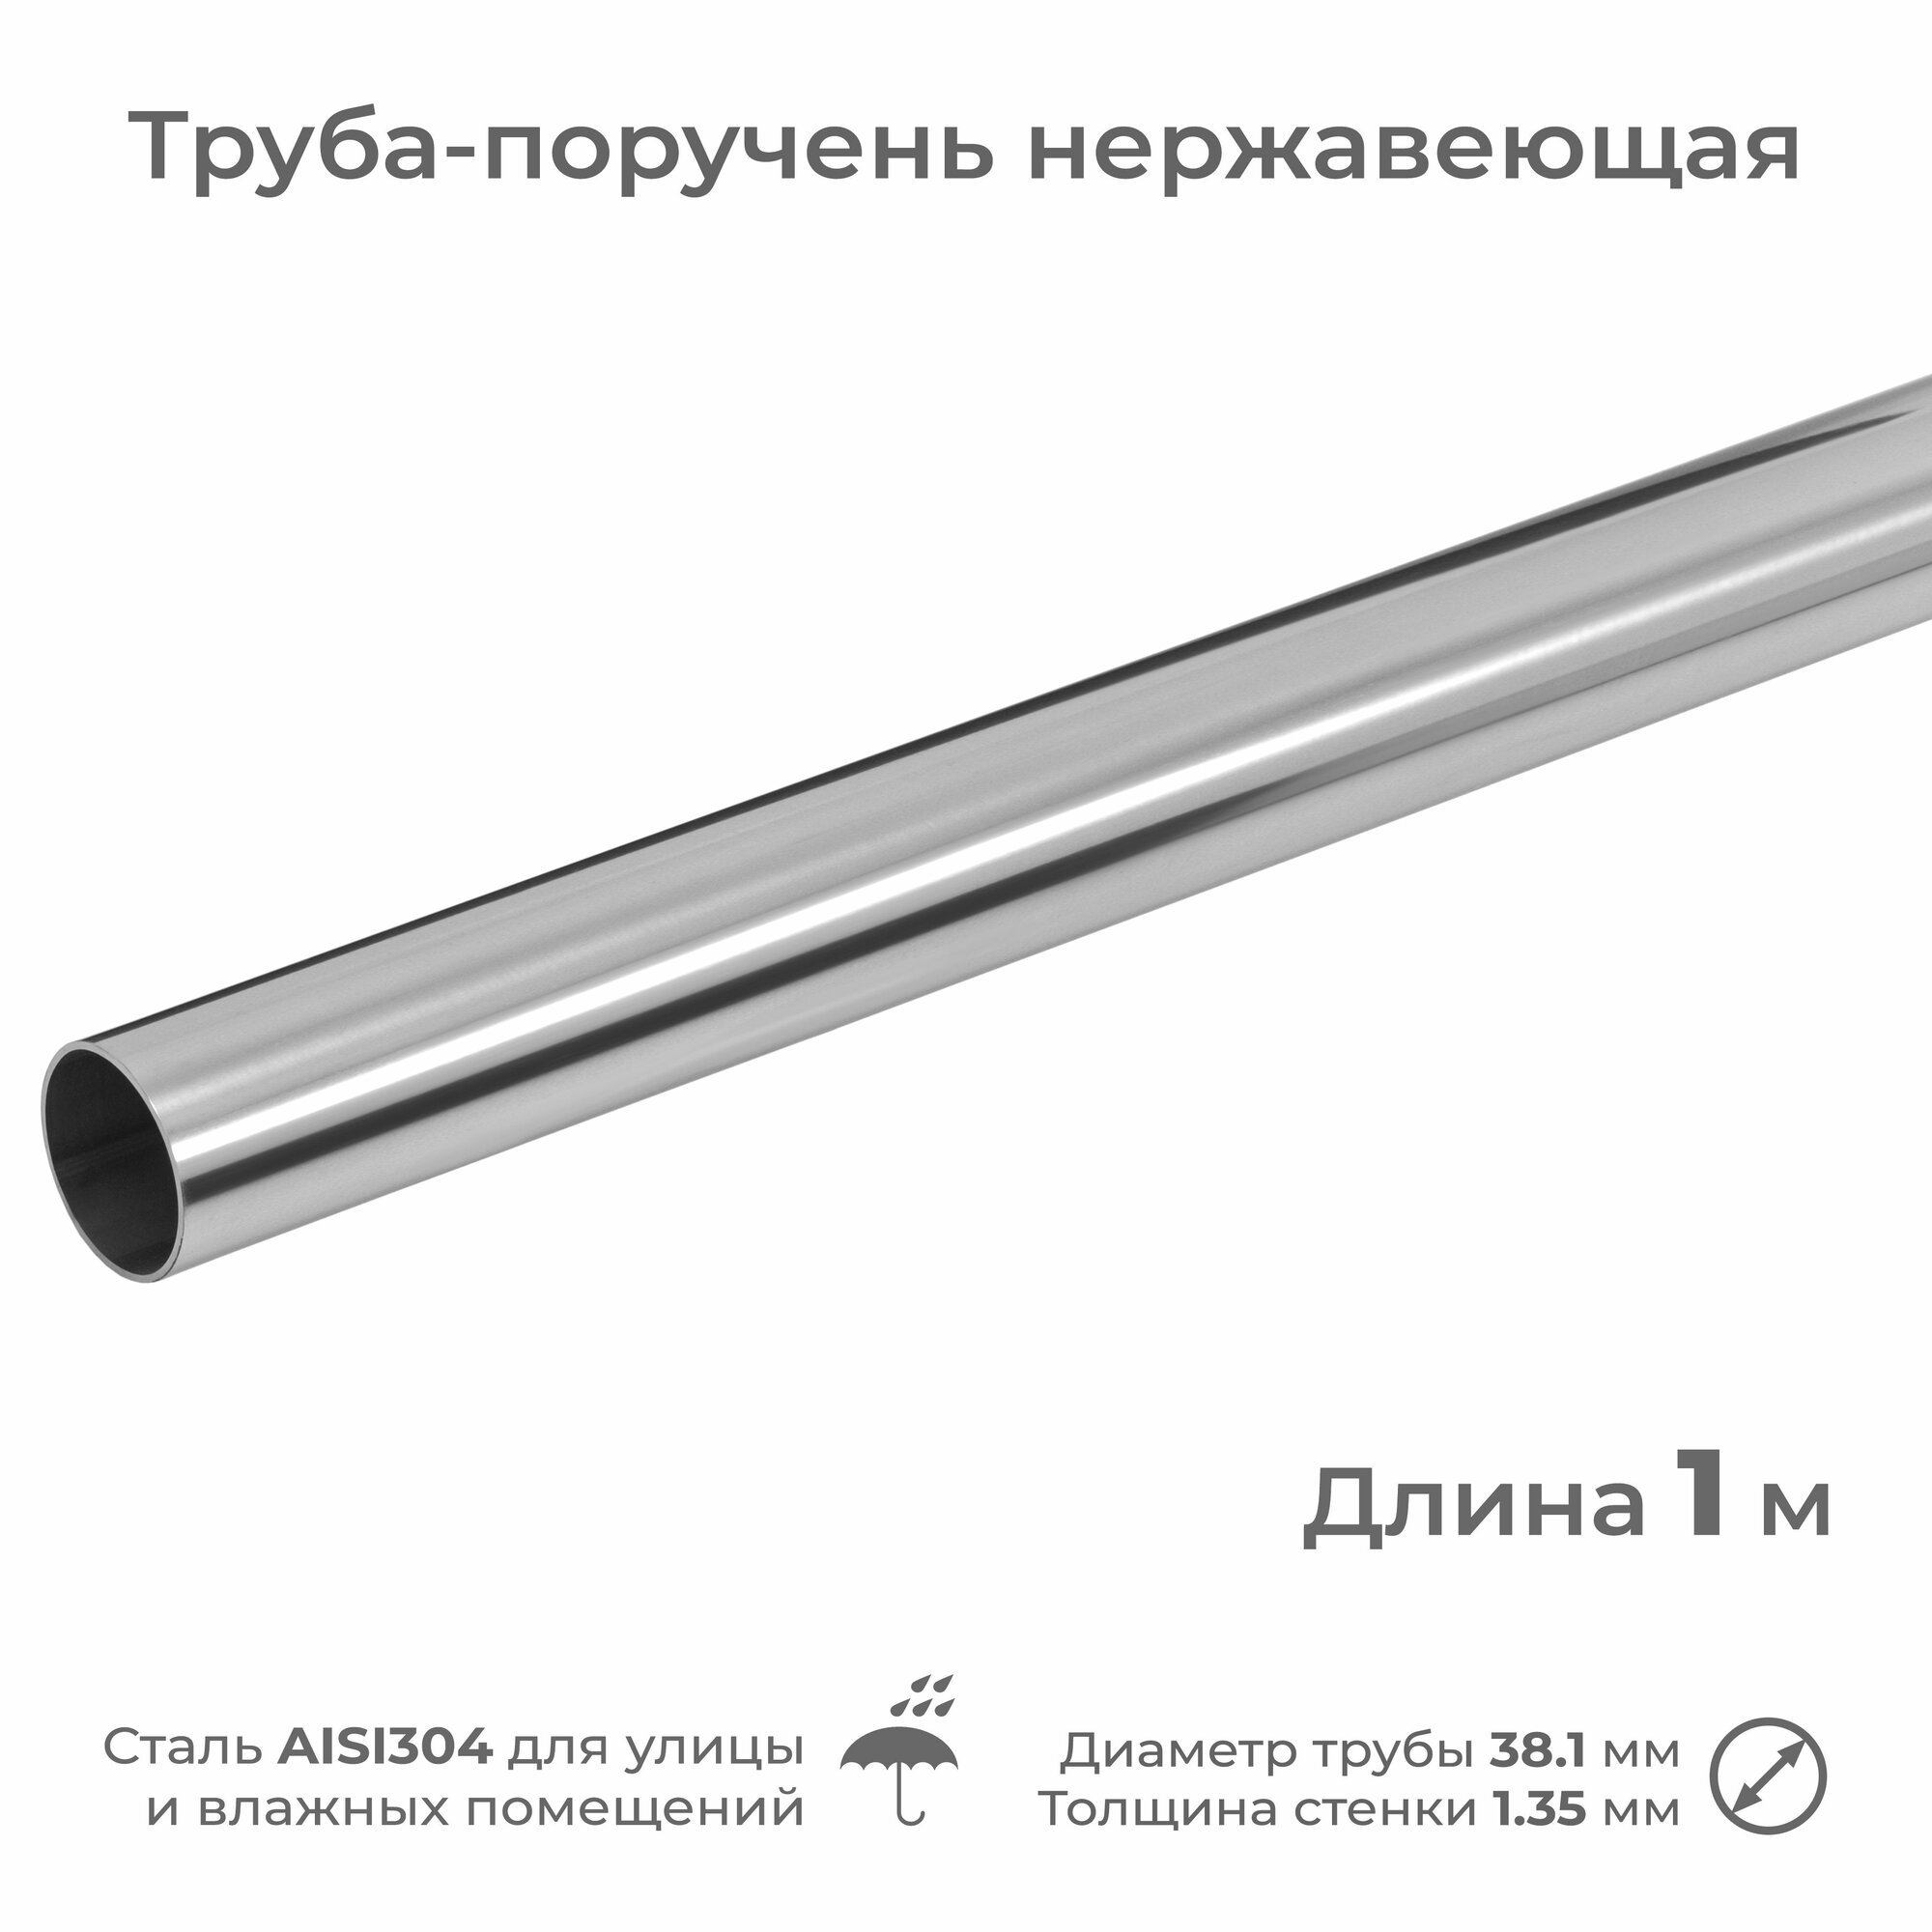 Труба-поручень из нержавеющей стали AISI304 диаметр 38.1 мм длина 1 м